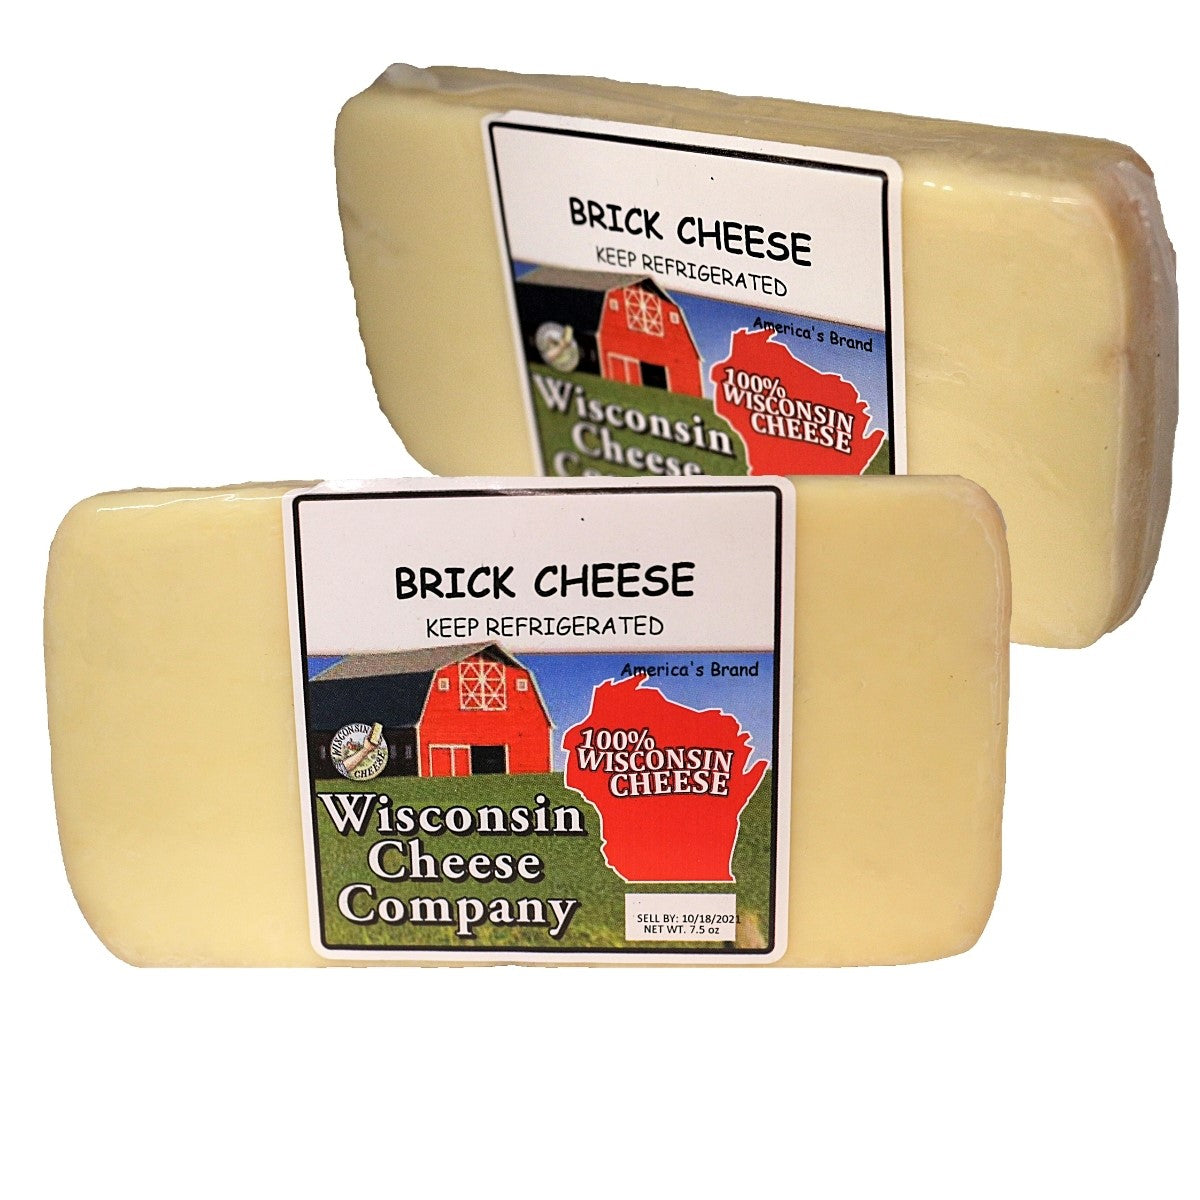 Two blocks of Brick Cheese